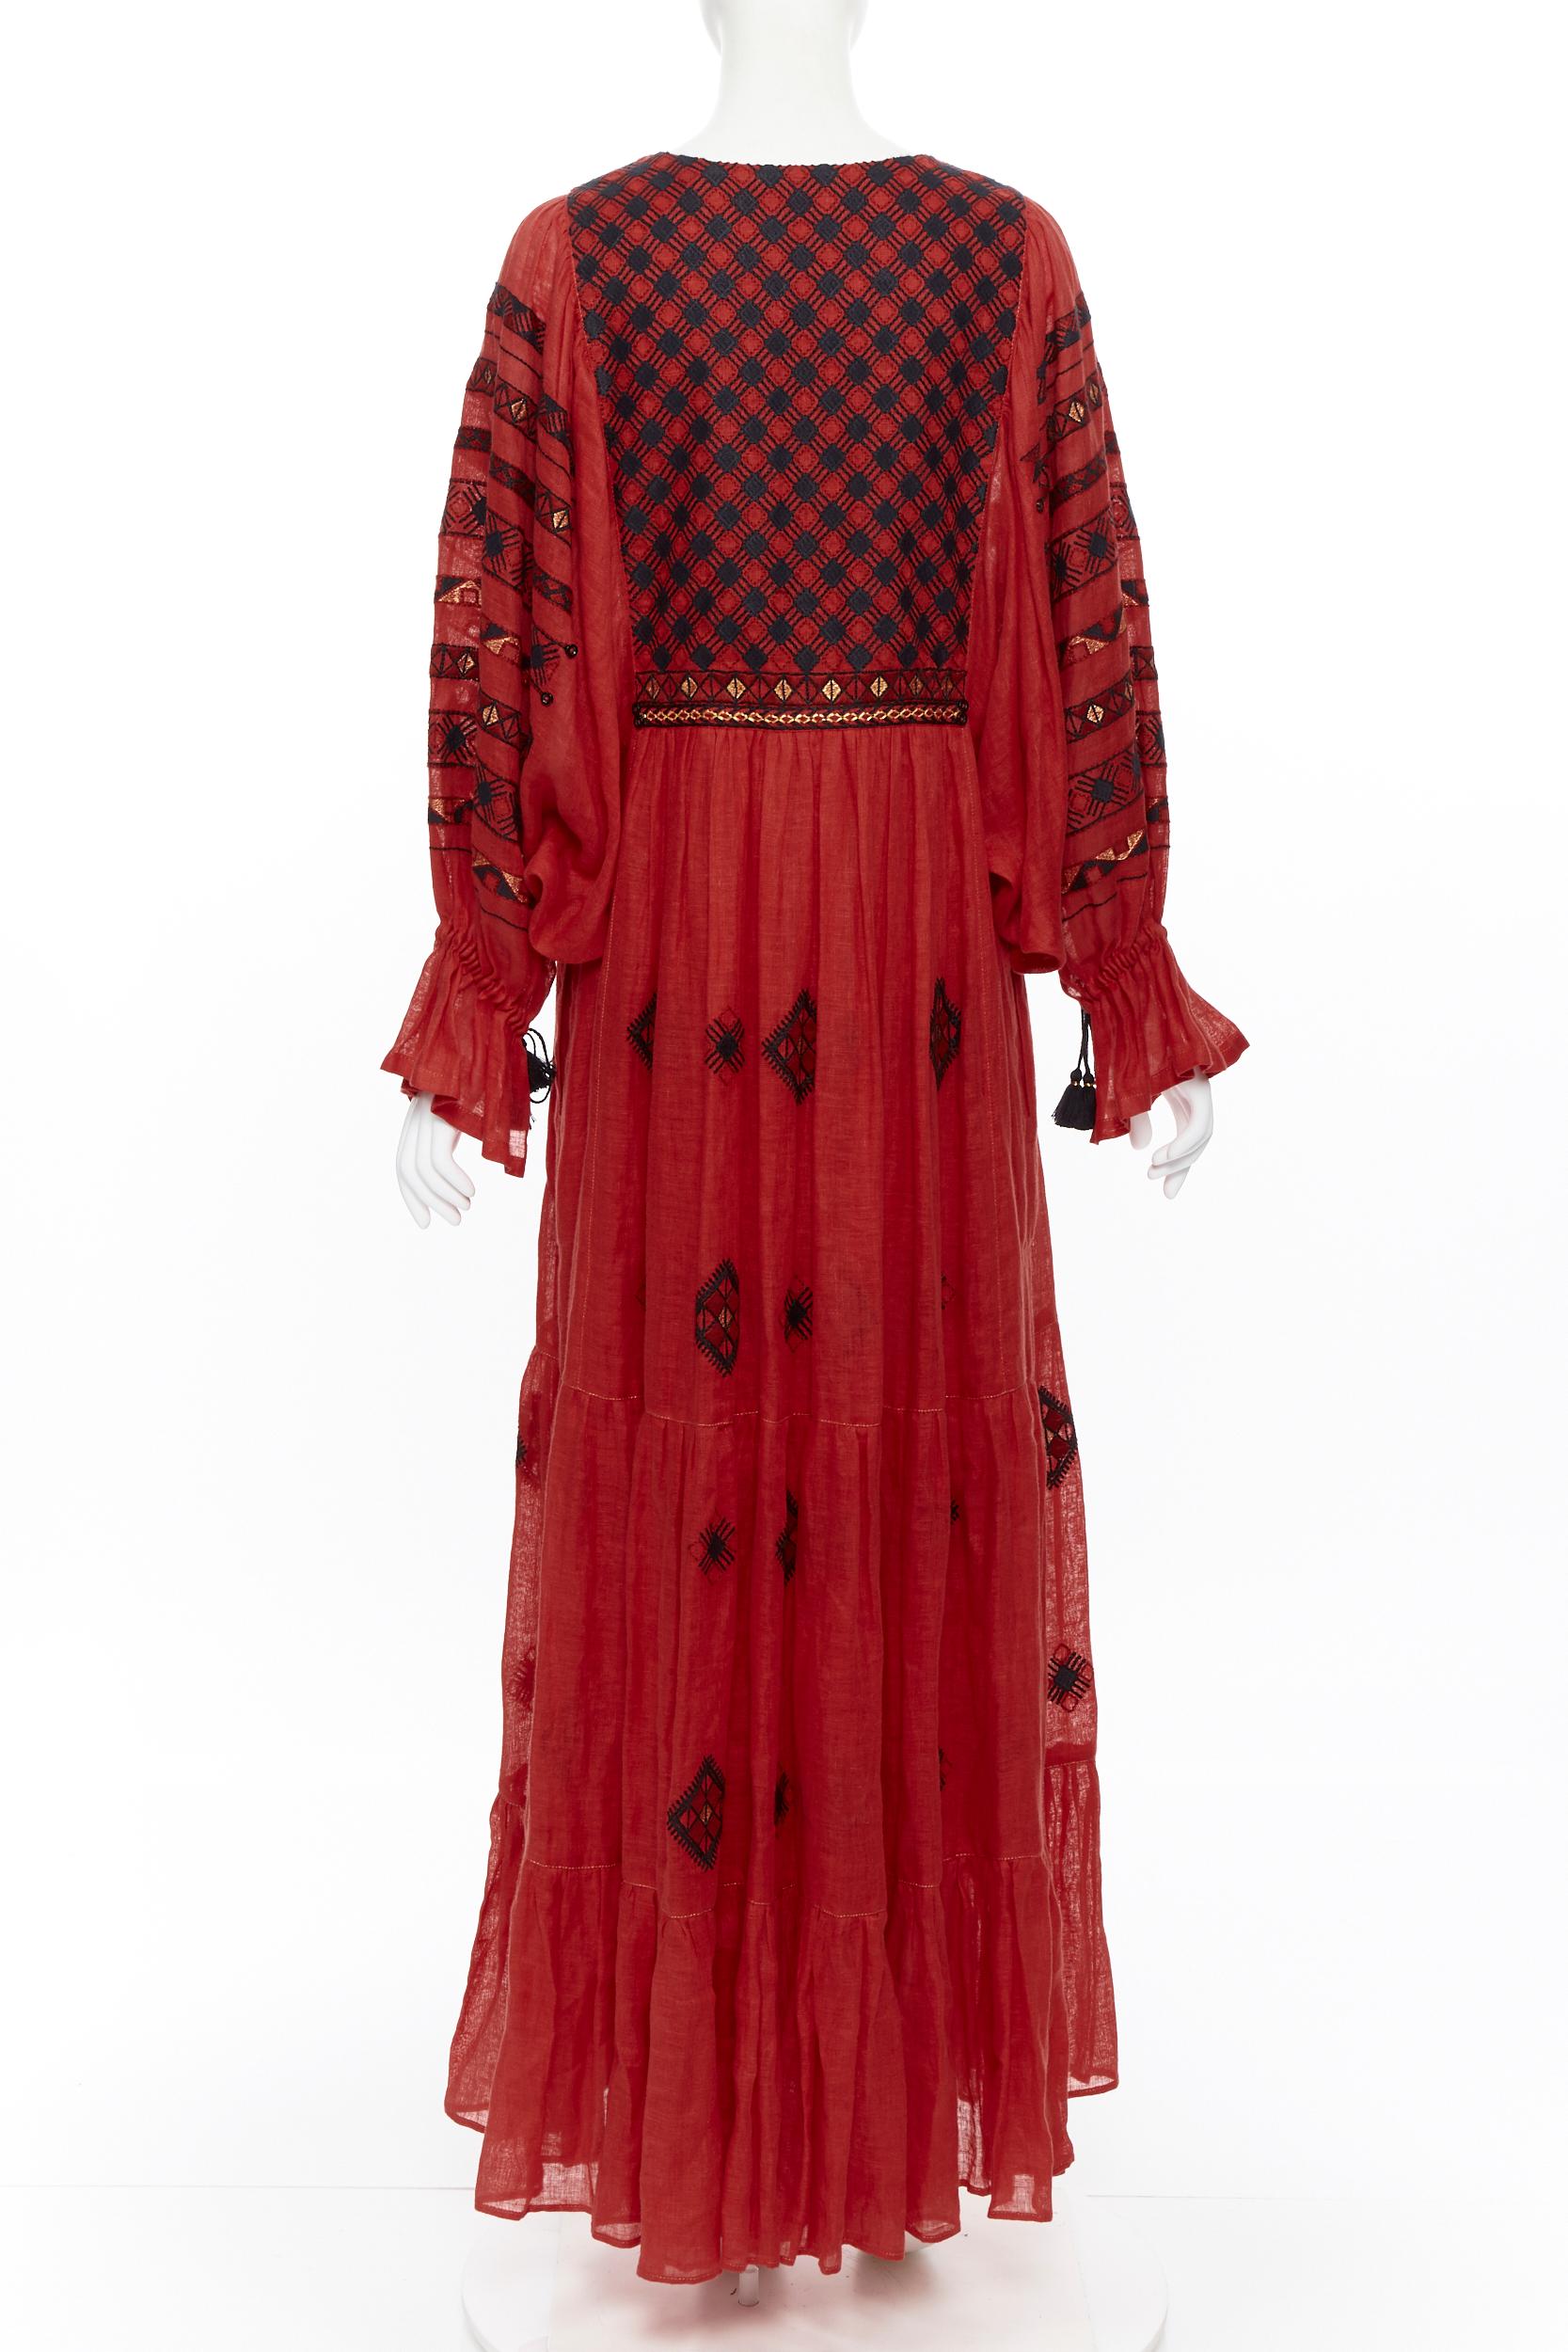 Women's new VITA KIN red Vyshyvanka embroidery bohemian folk bubble sleeve maxi dress S